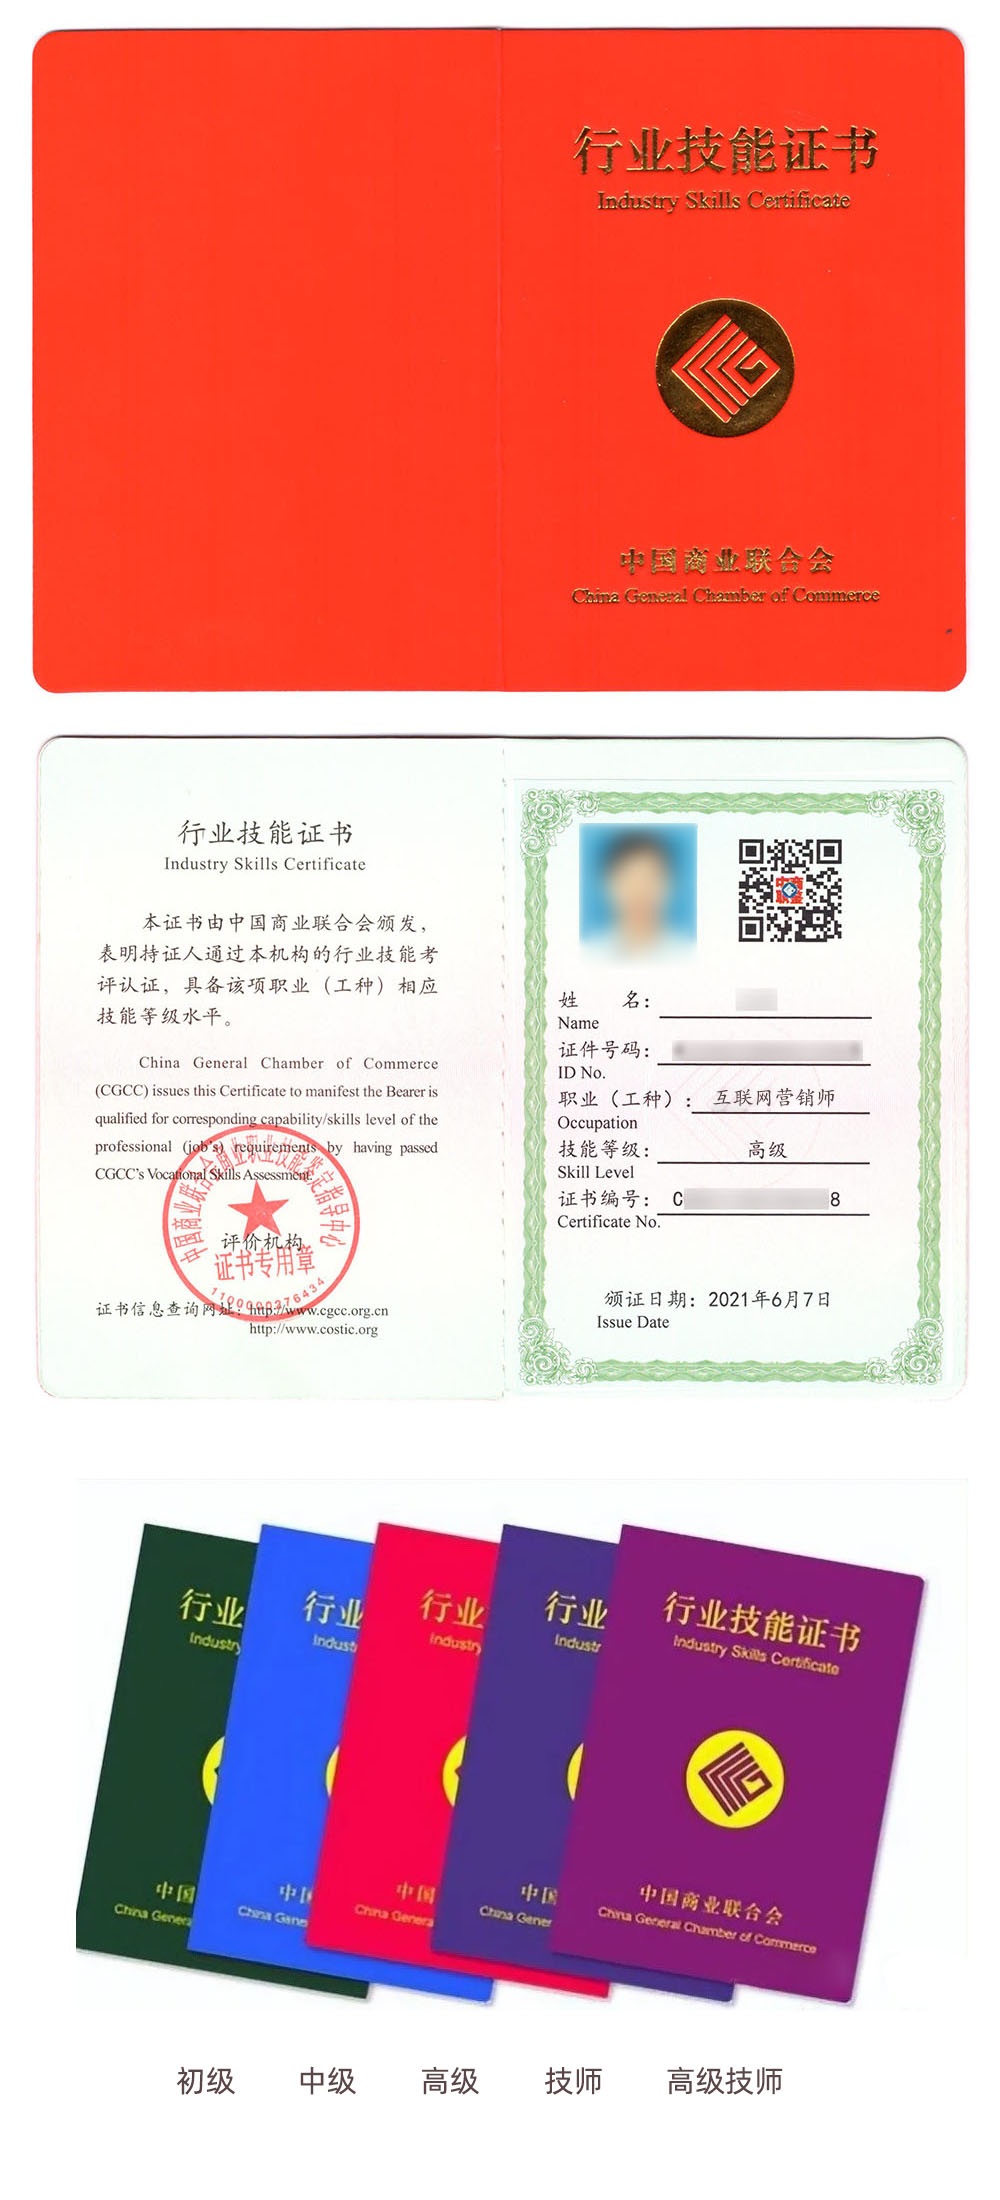 中国商业联合会商业职业技能鉴定指导中心 行业技能证书 互联网营销师证证书样本